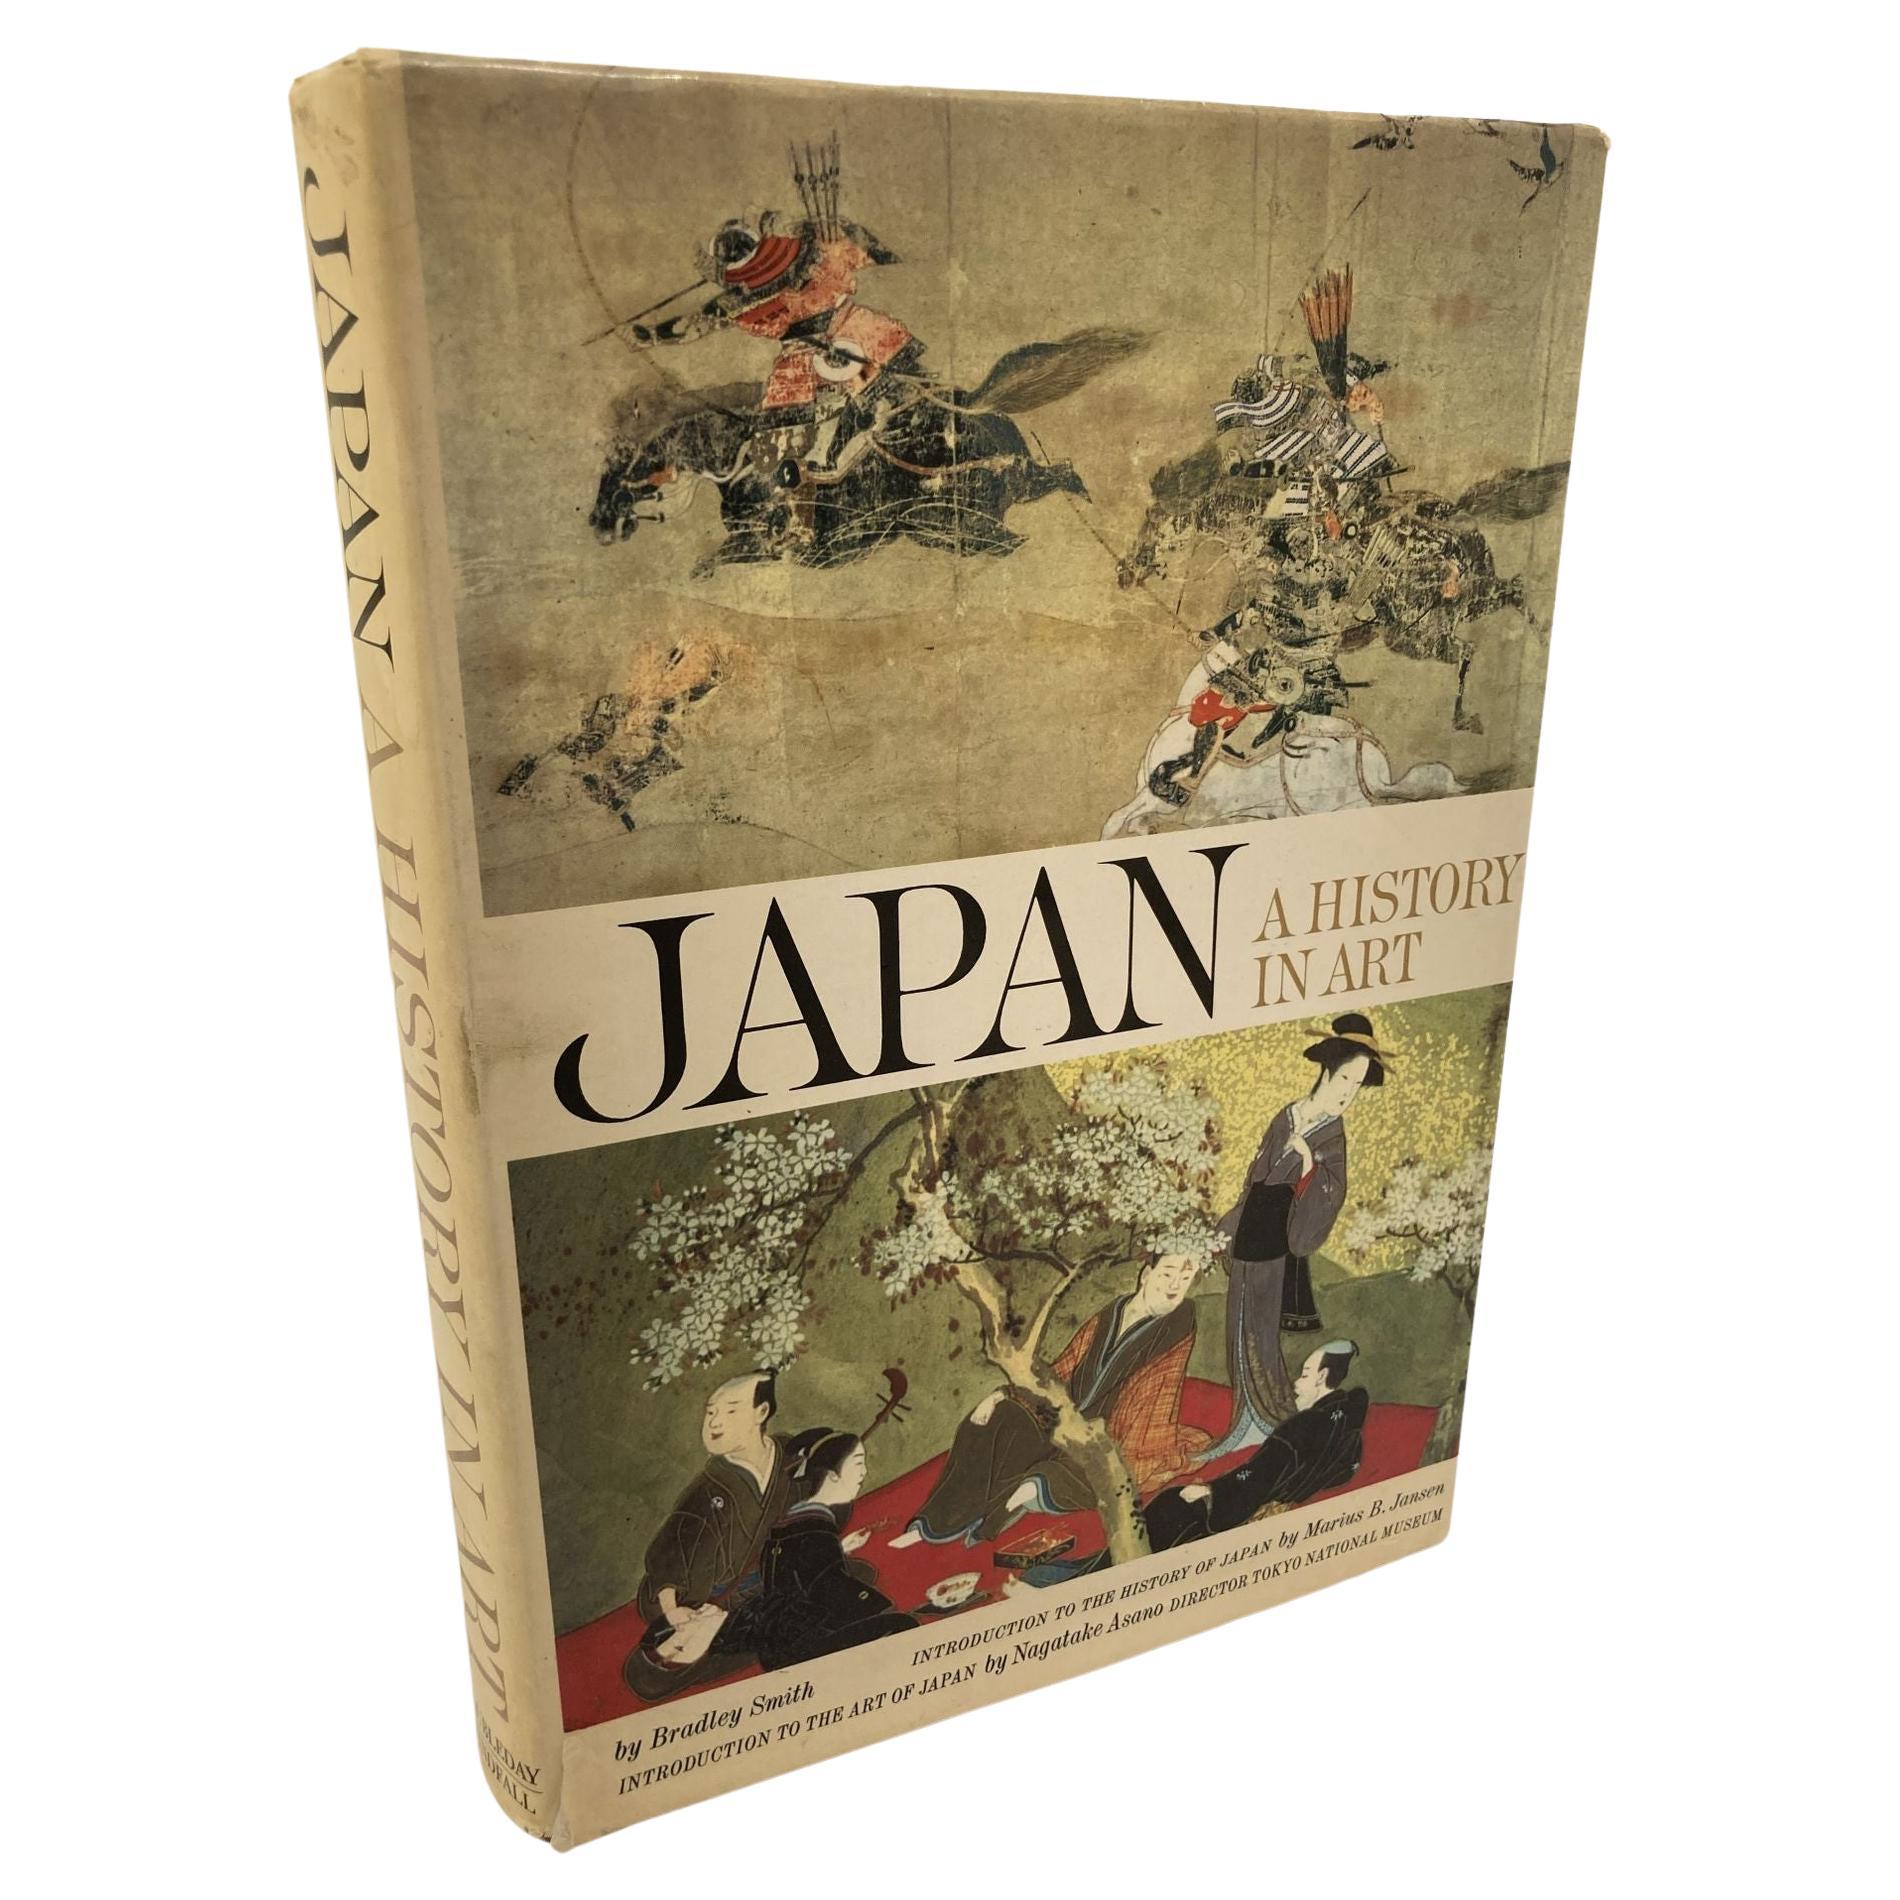 Japan a History in Art, Buch von Bradley Smith, Erstausgabe 1964